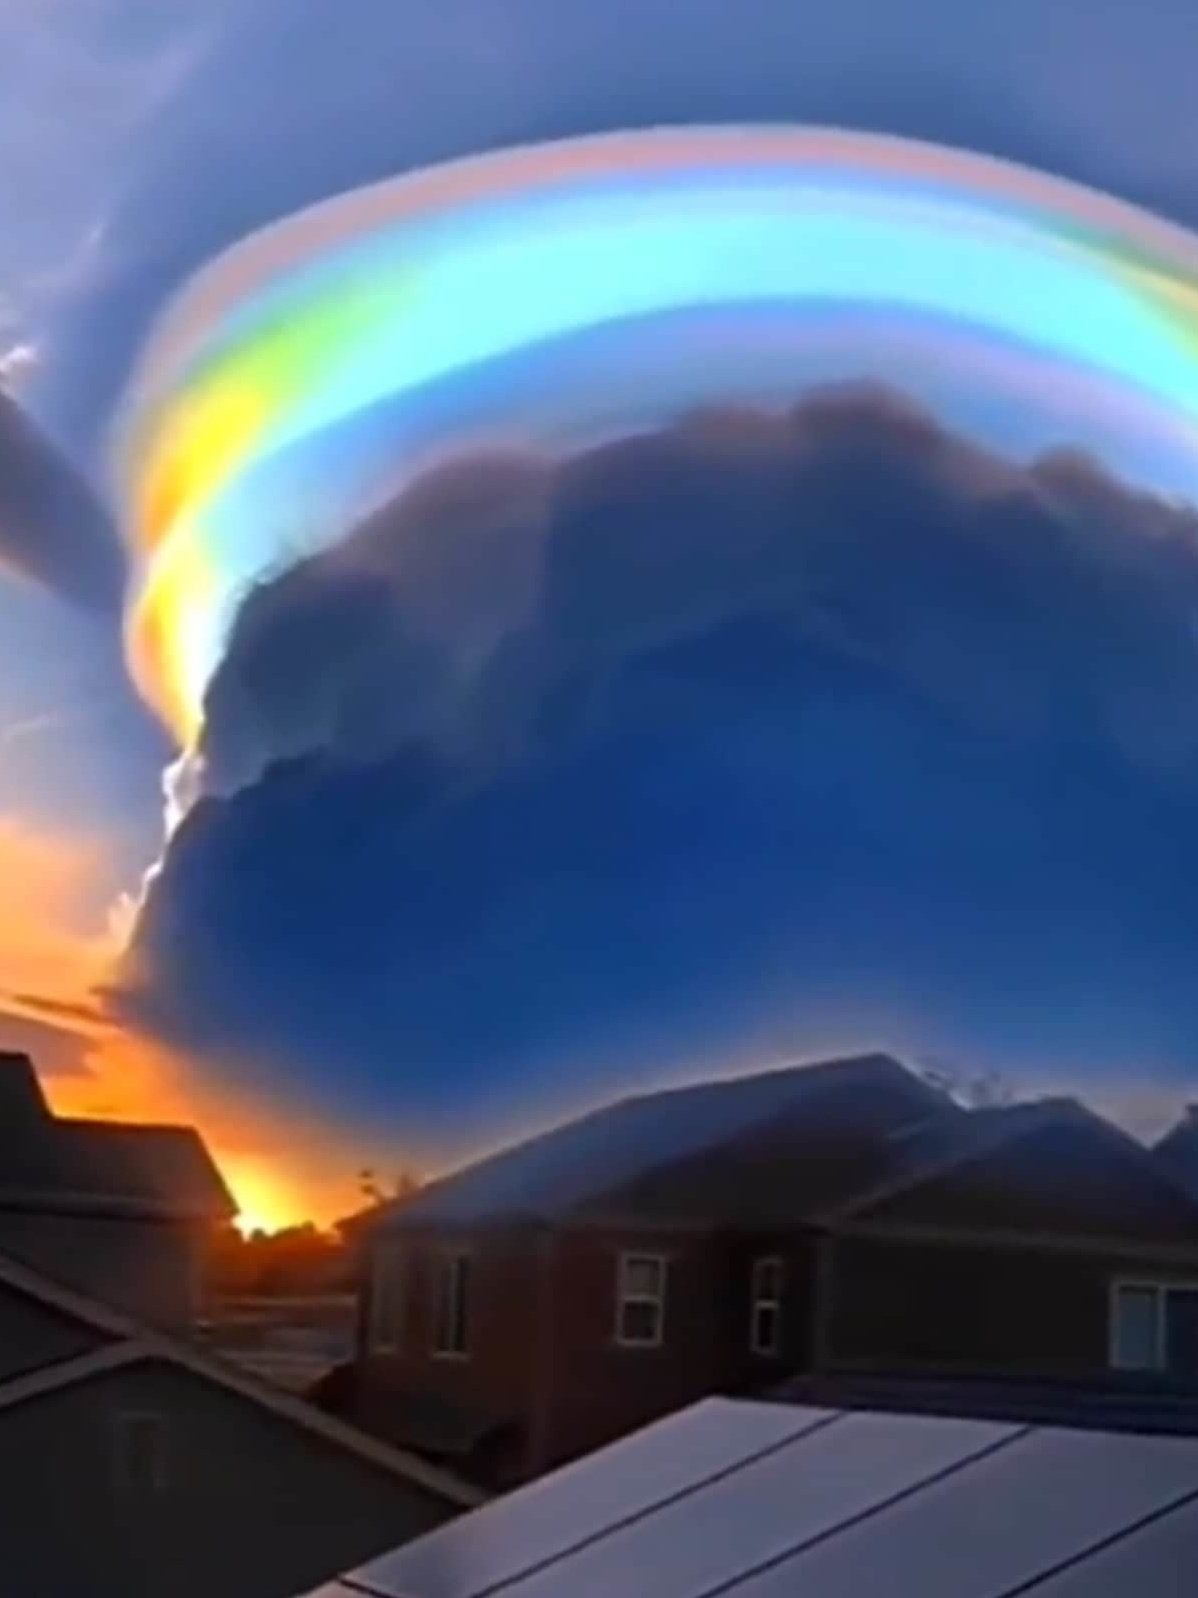 O que são nuvens arco-íris? Conheça esse fenômeno que coloca cores no céu -  Olhar Digital